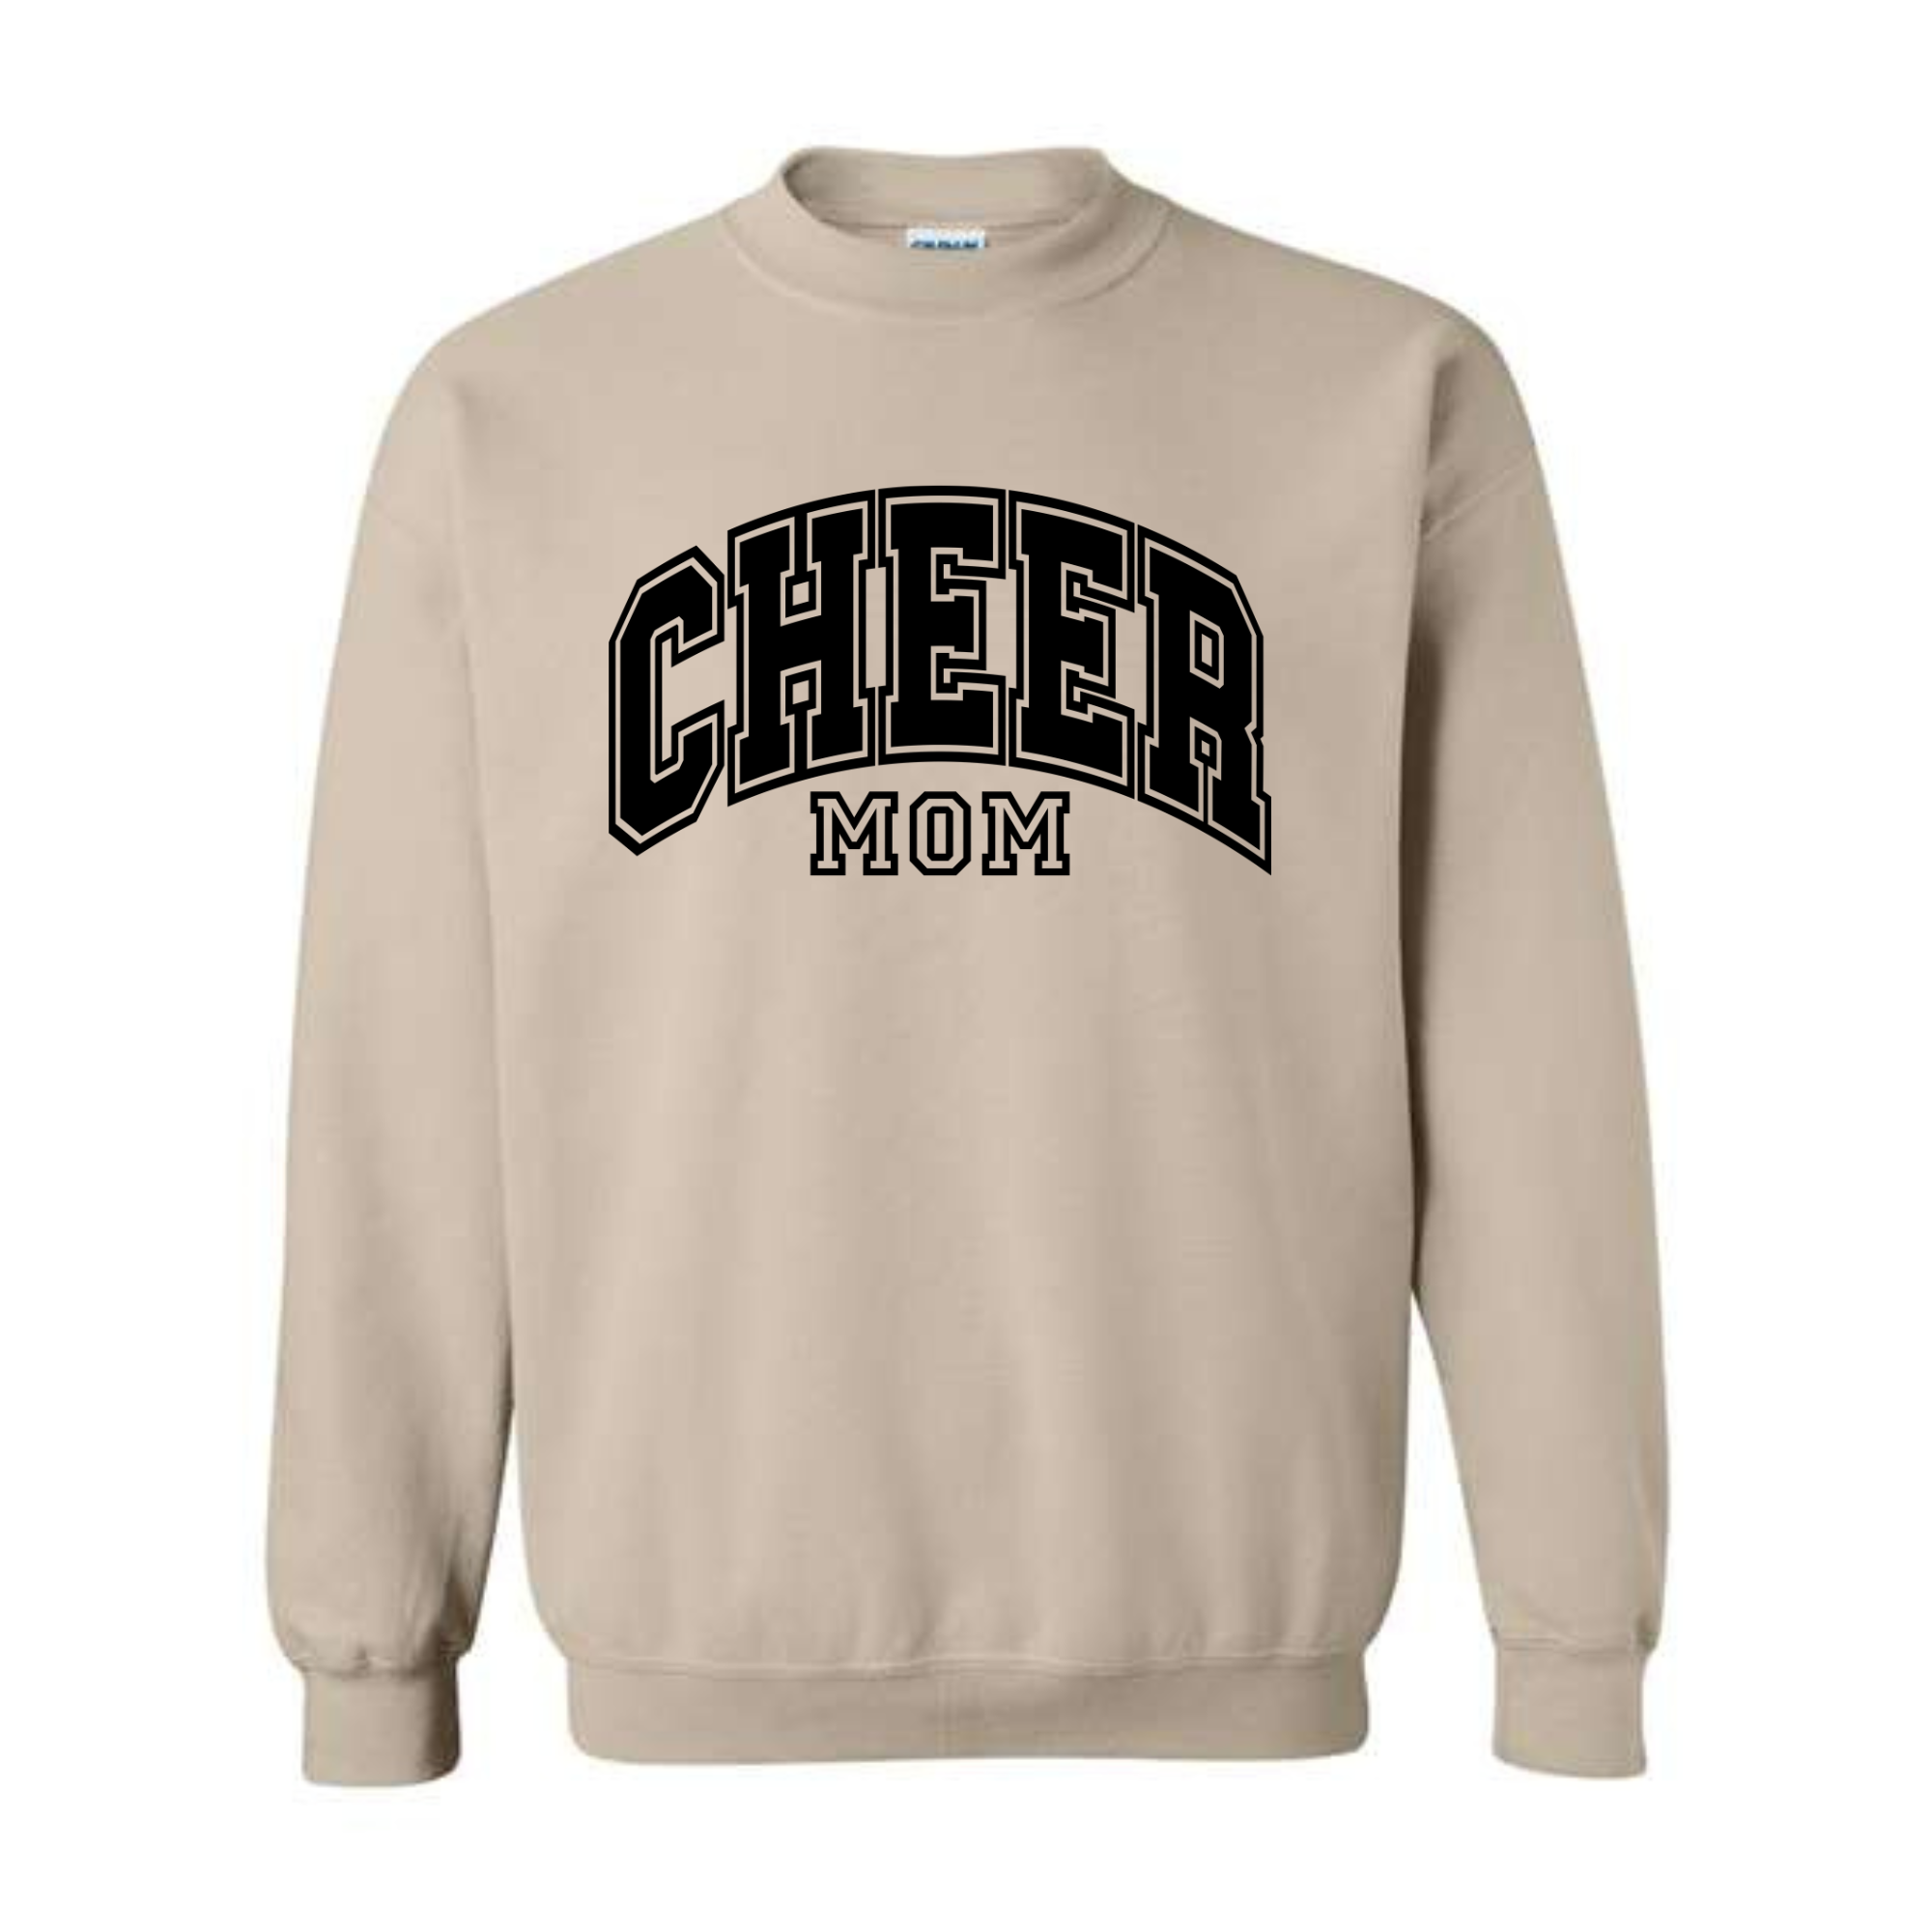 Central Cheer Mom Crewneck Sweatshirt- 18000